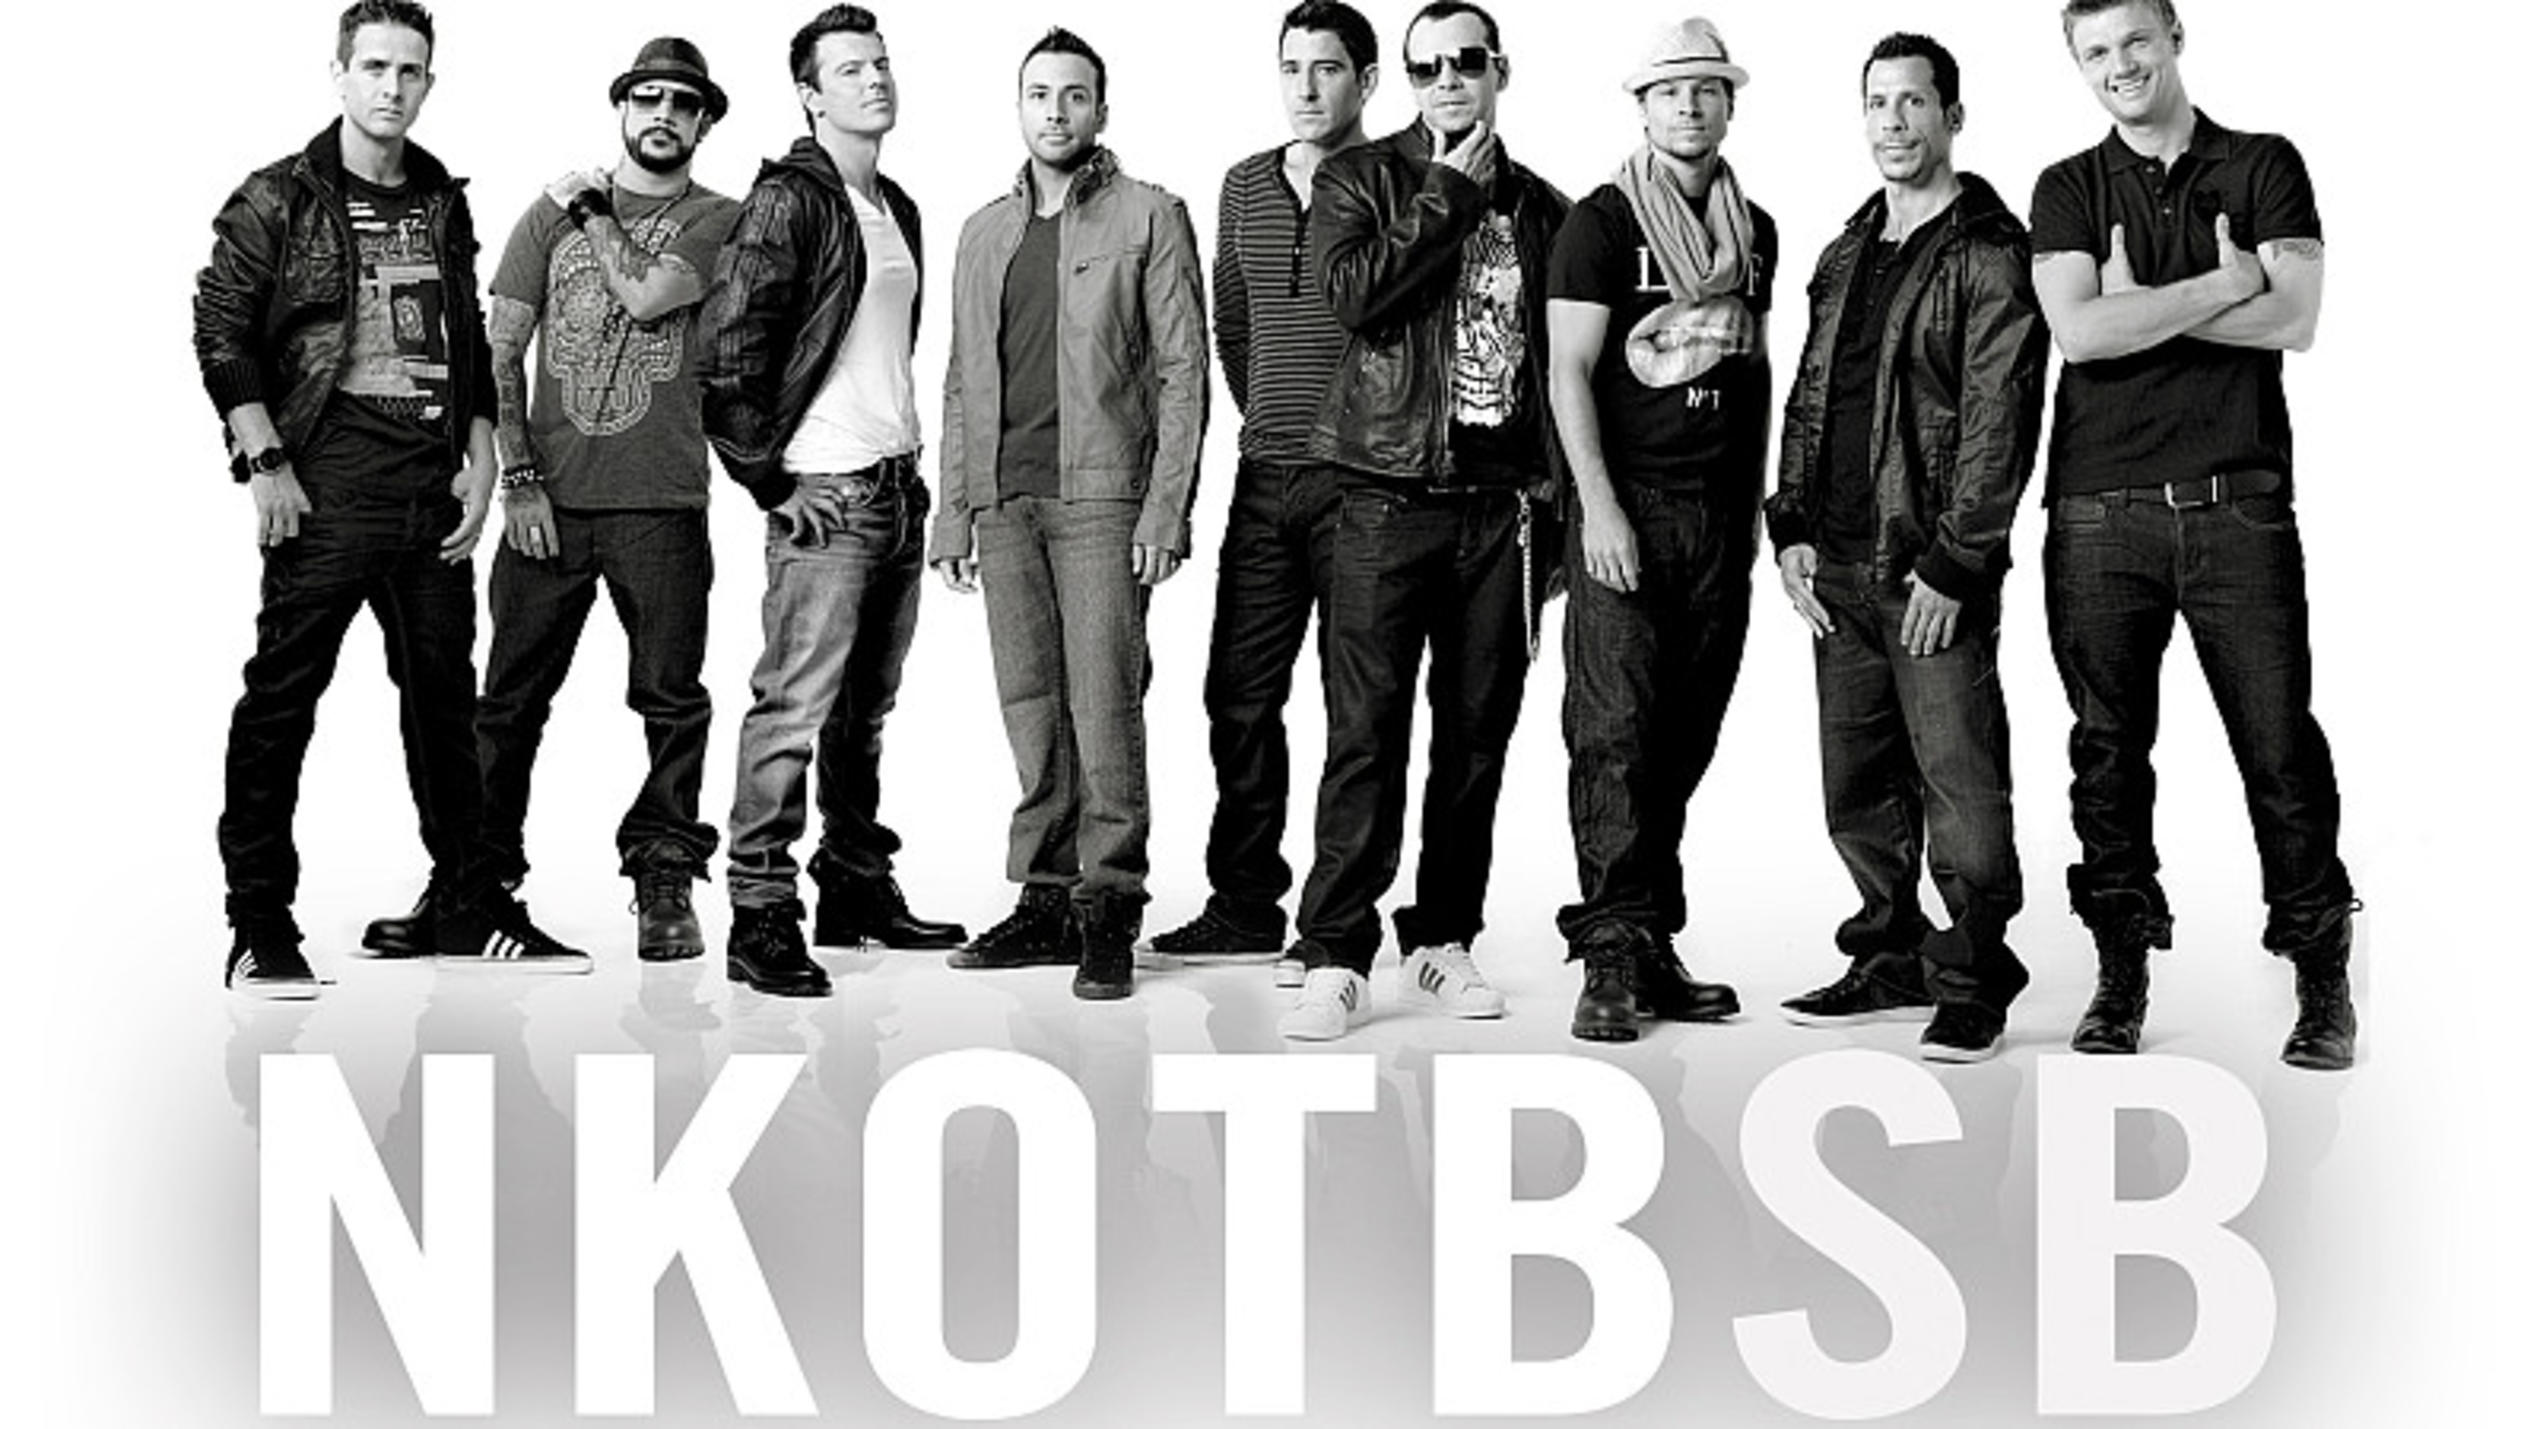 NKOTBSB - die Super-Boygroup geht auf Tour